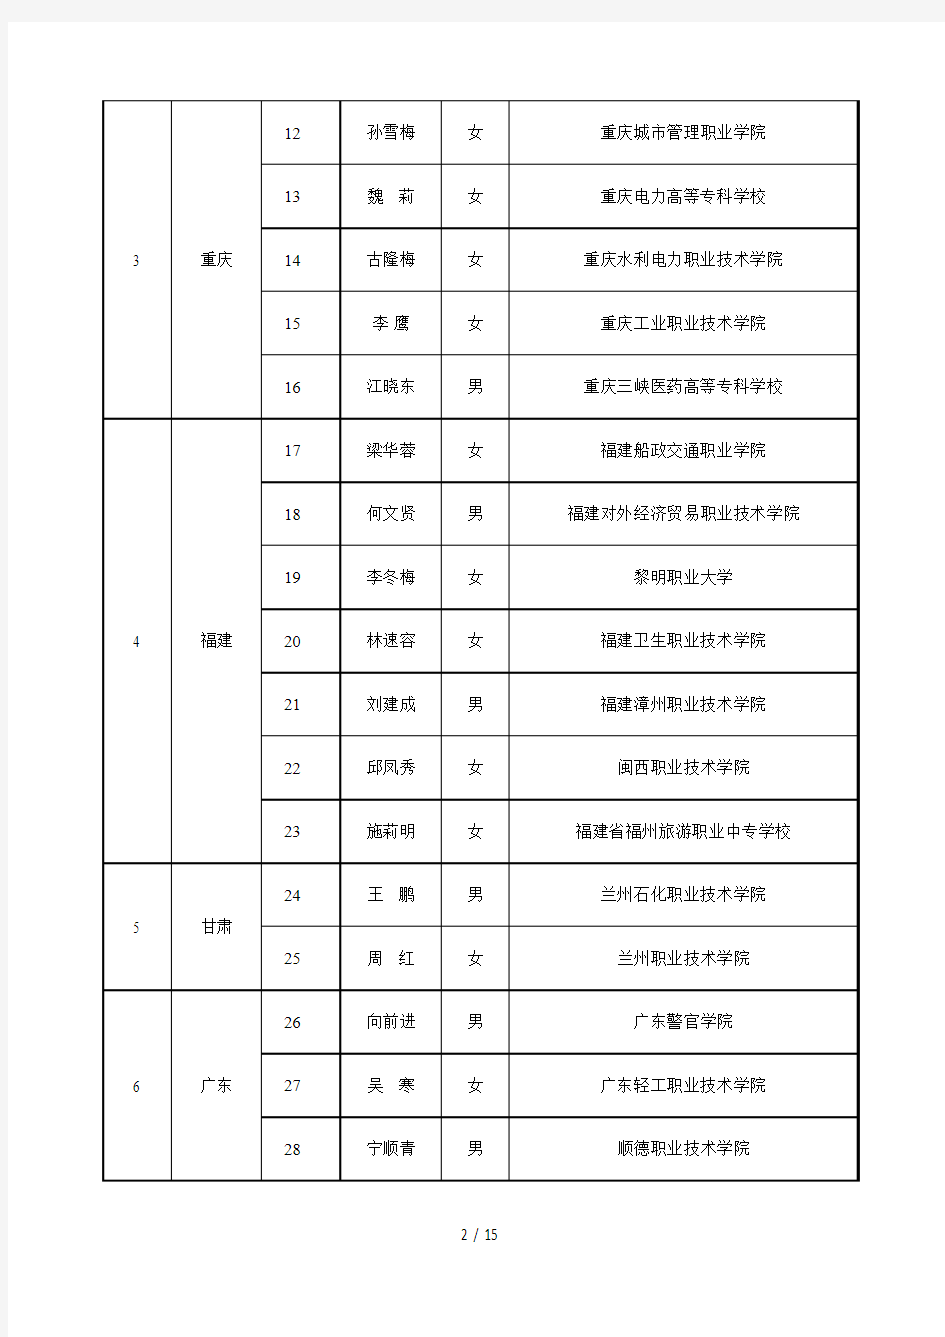 教育部职业院校外语教指委分委会委员名单(按省份排列)